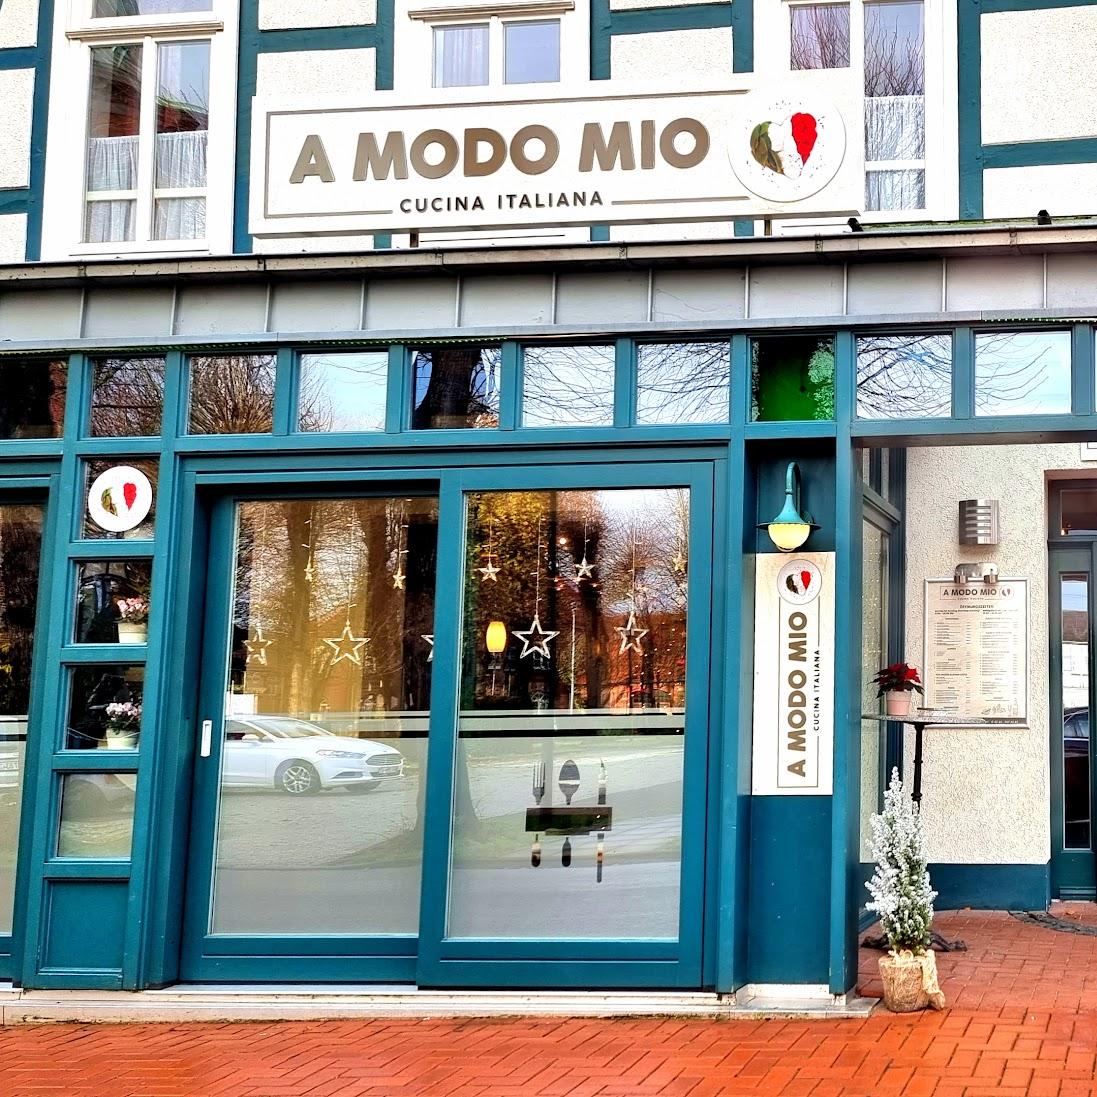 Restaurant "A MODO MIO" in Harpstedt